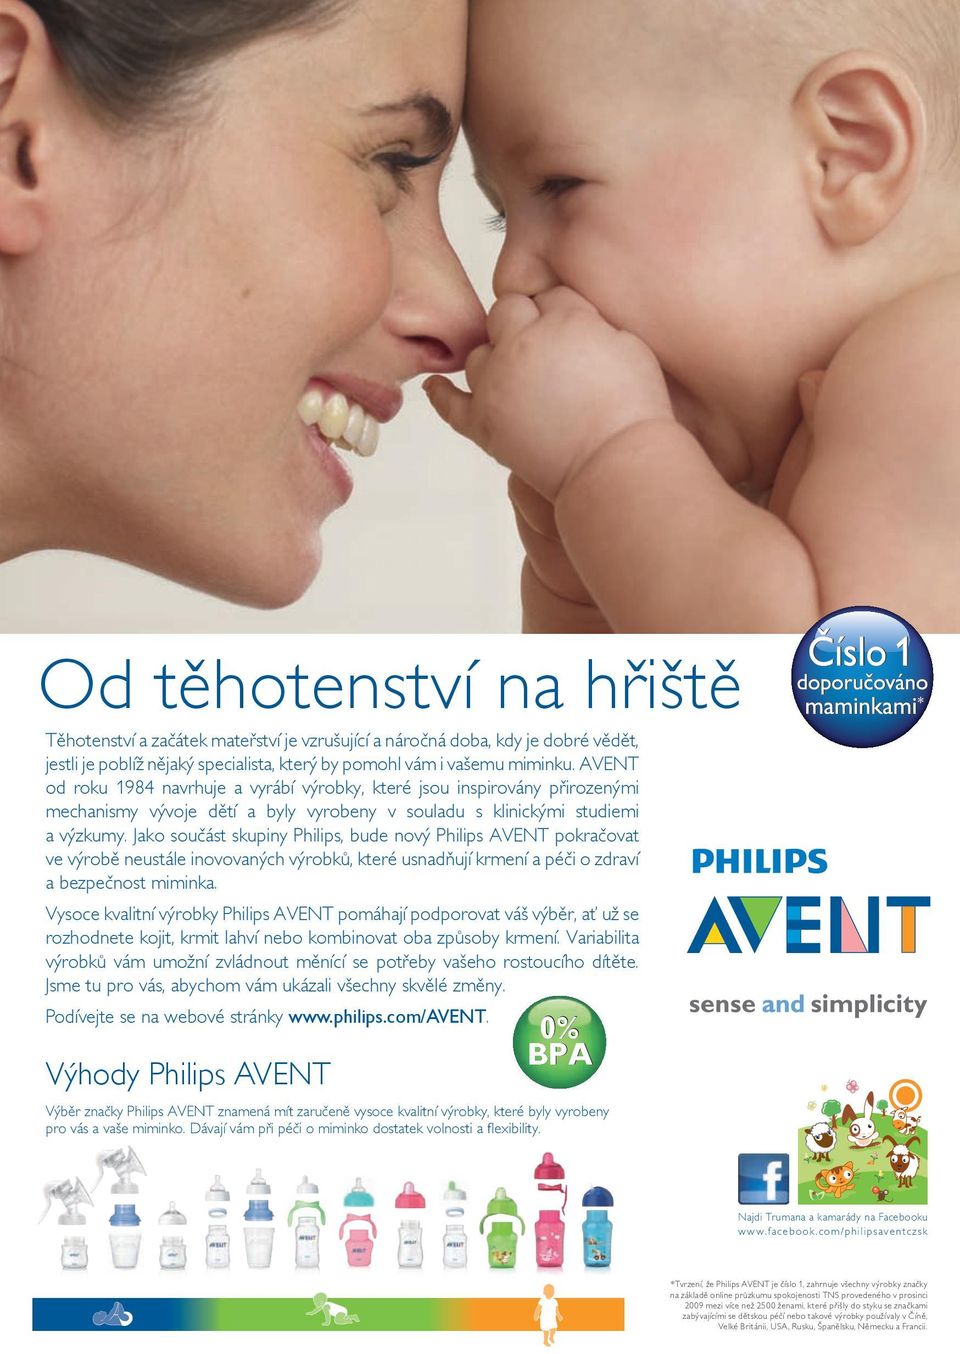 Jako součást skupiny Philips, bude nový Philips AVENT pokračovat ve výrobě neustále inovovaných výrobků, které usnadňují krmení a péči o zdraví a bezpečnost miminka.